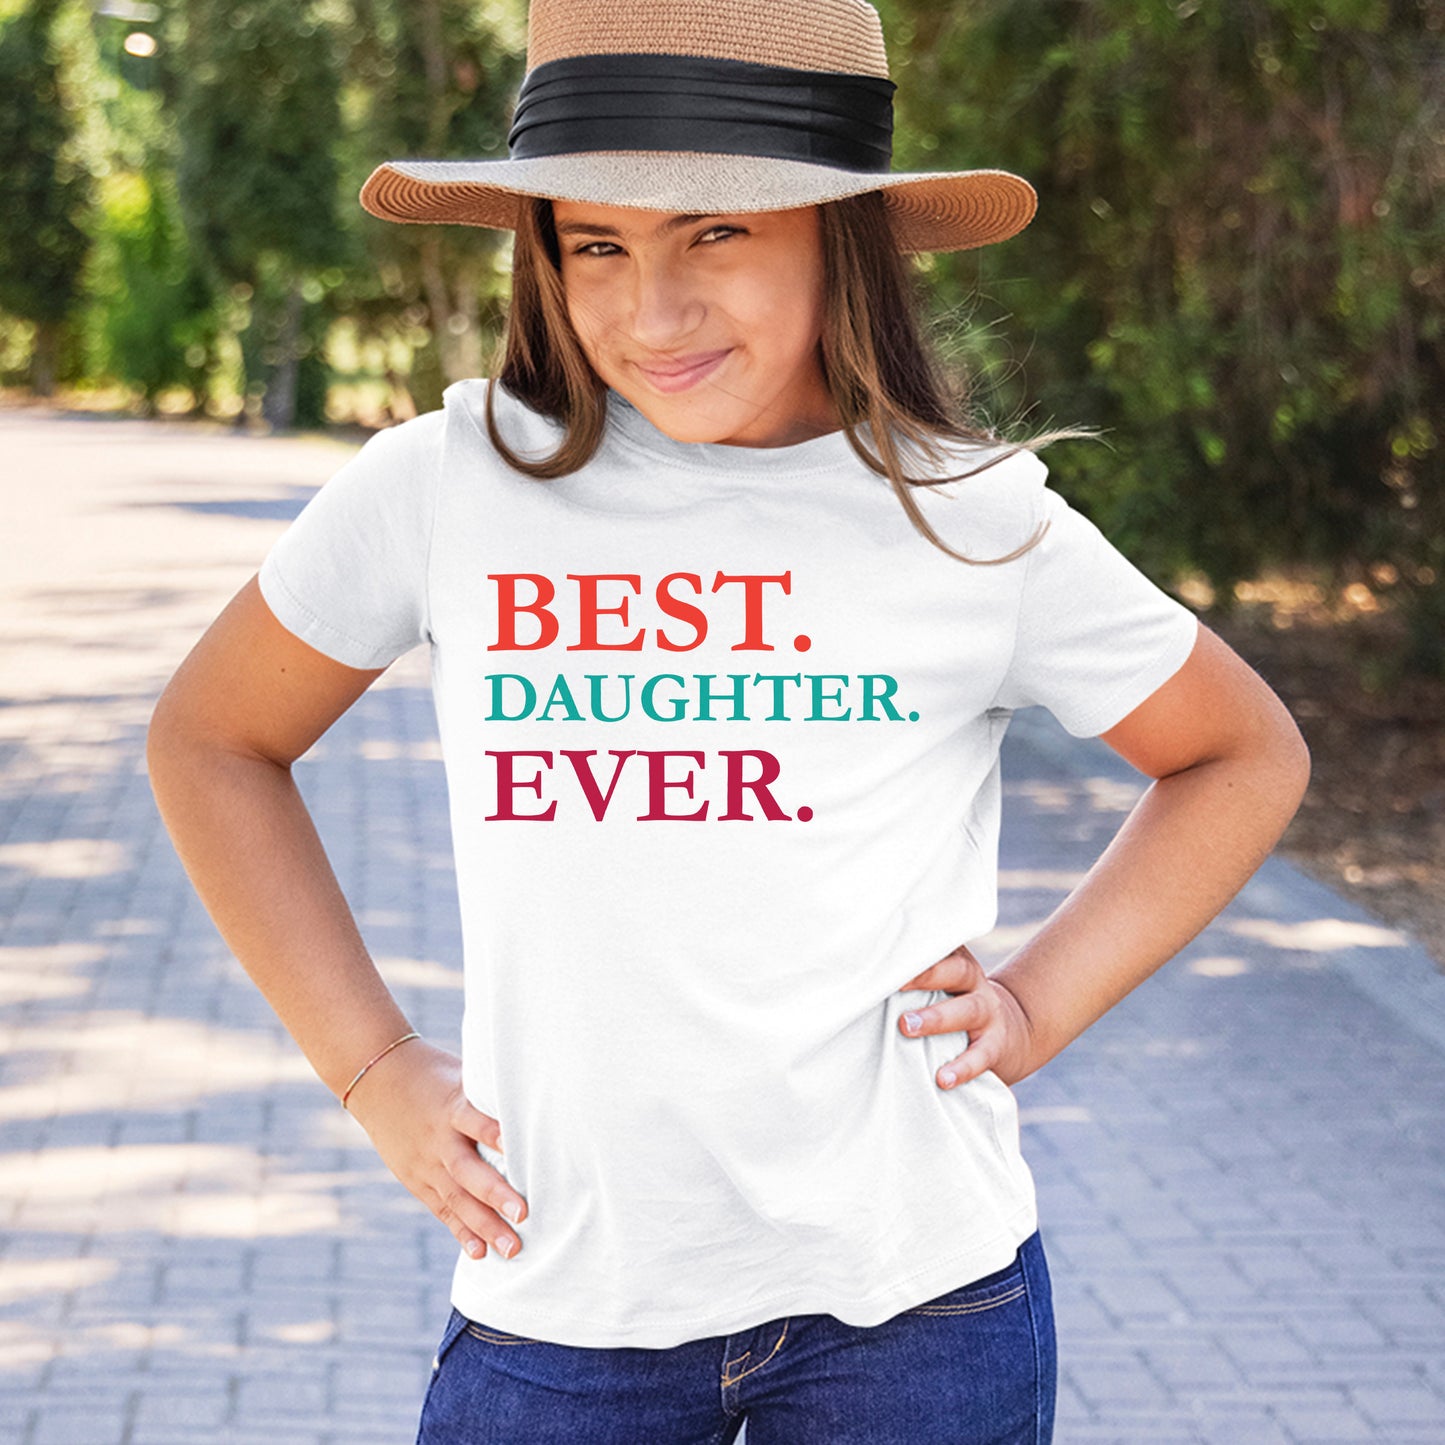 Best Daughter Ever T-shirt